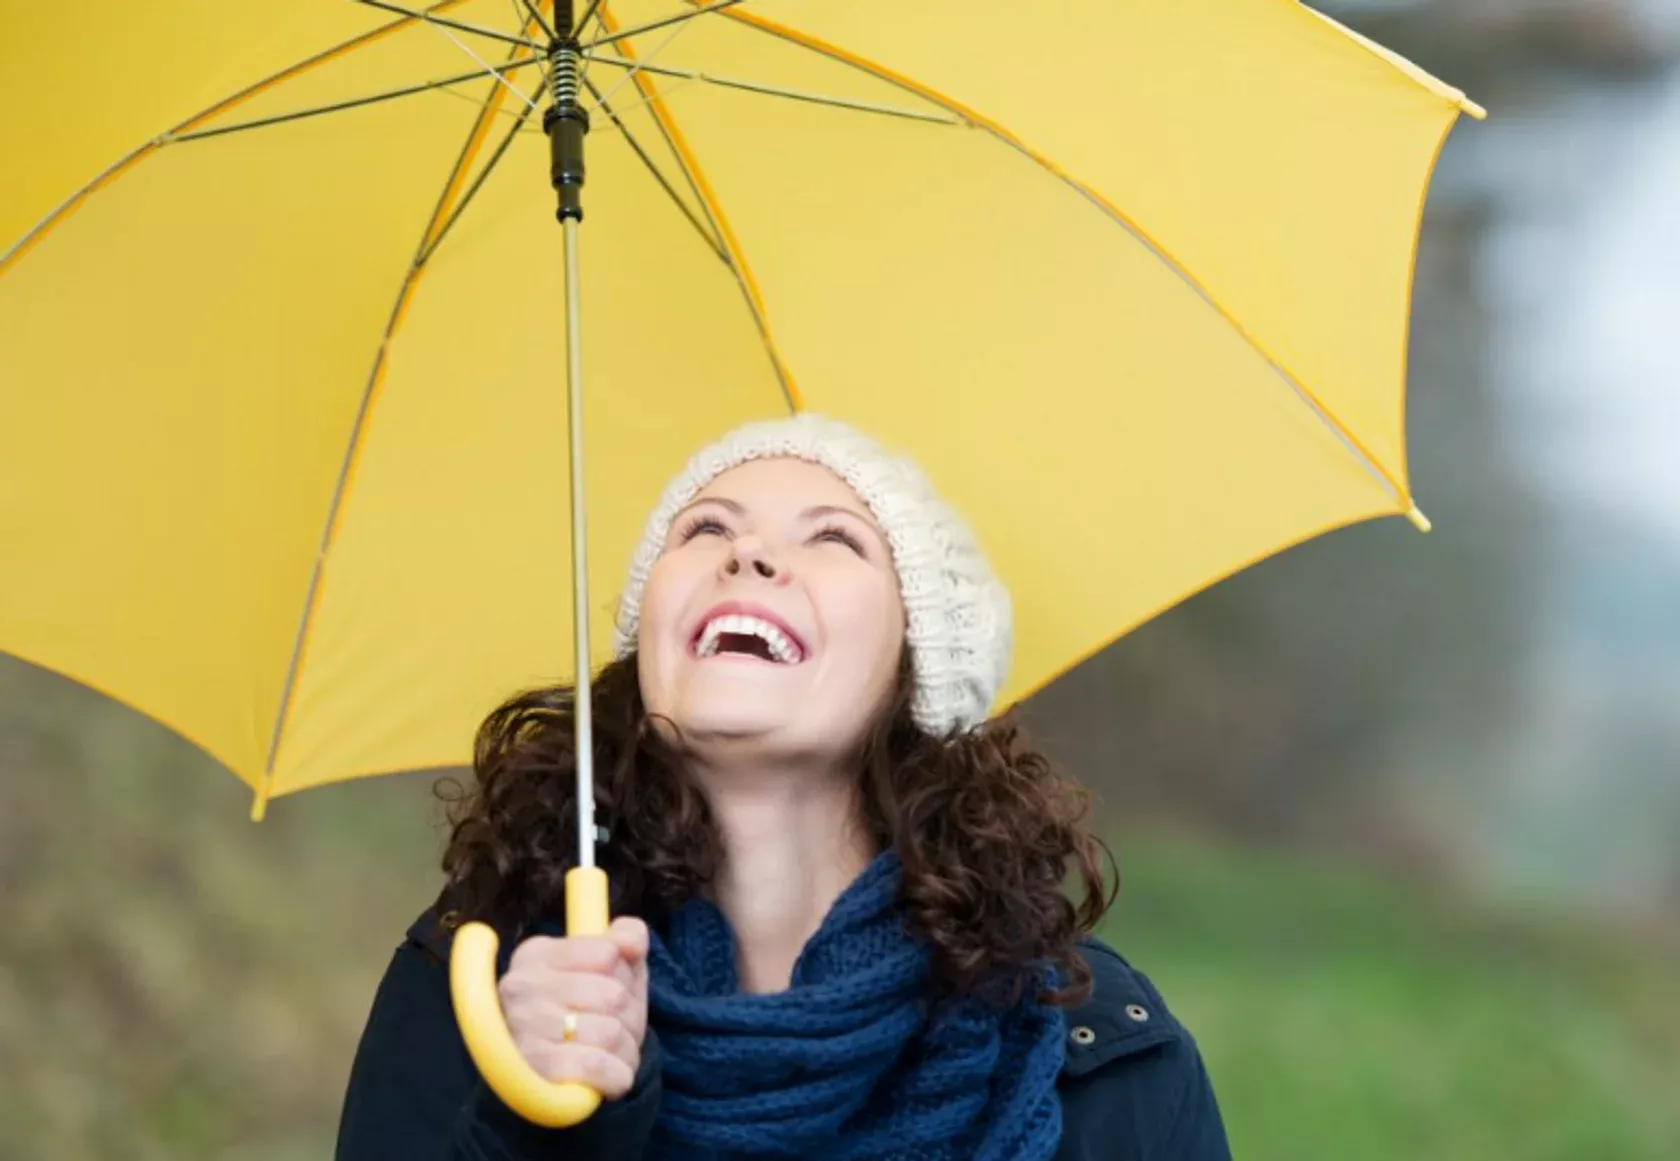 Frau mit gelbem Regenschirm lacht trotz schlechten Wetters.